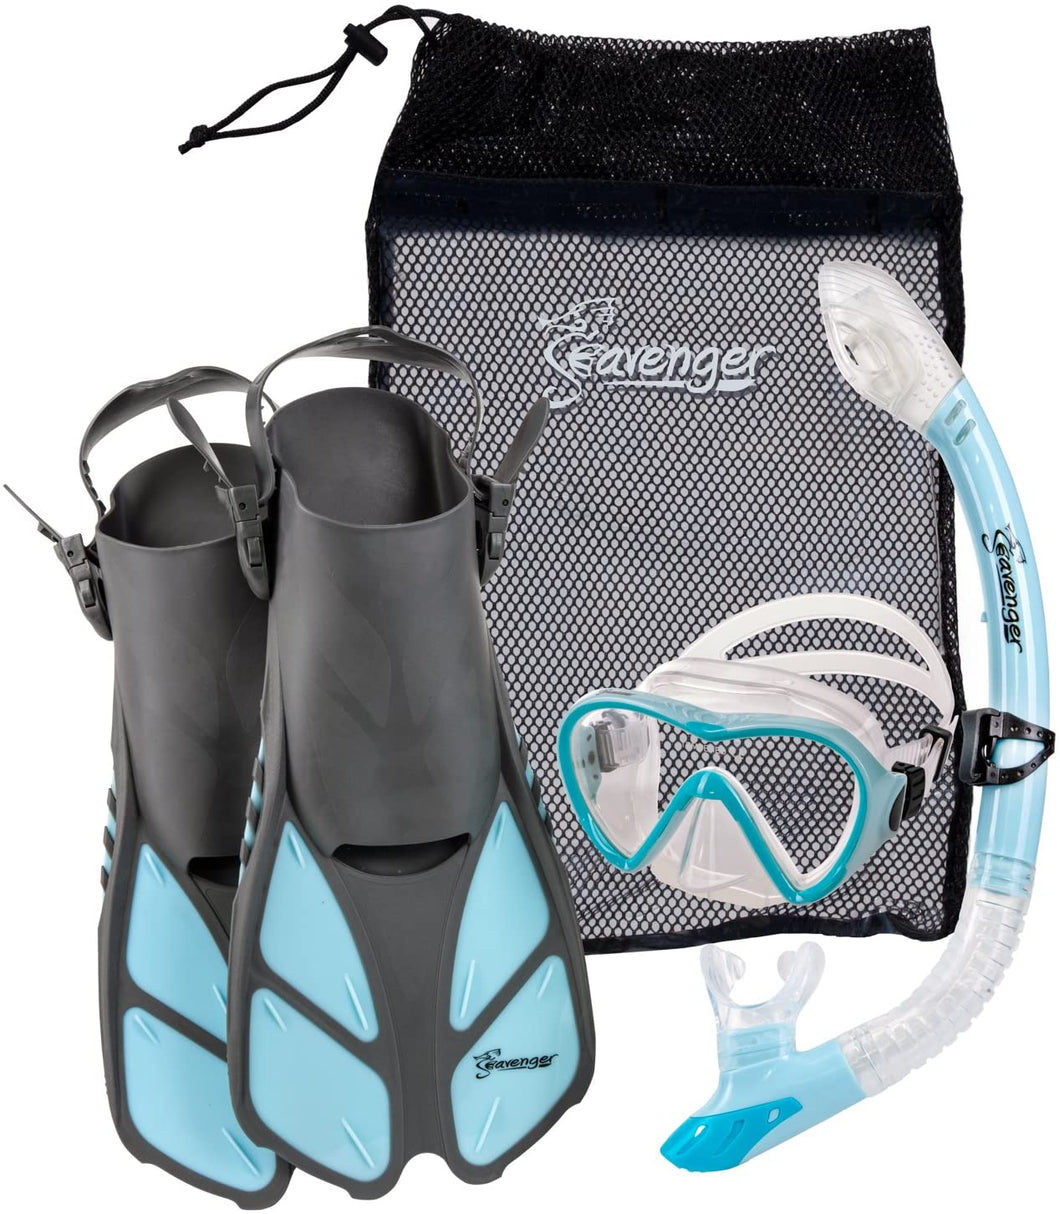 Seavenger Aviator Snorkeling Set with Gear Bag - shop.beachguide.com